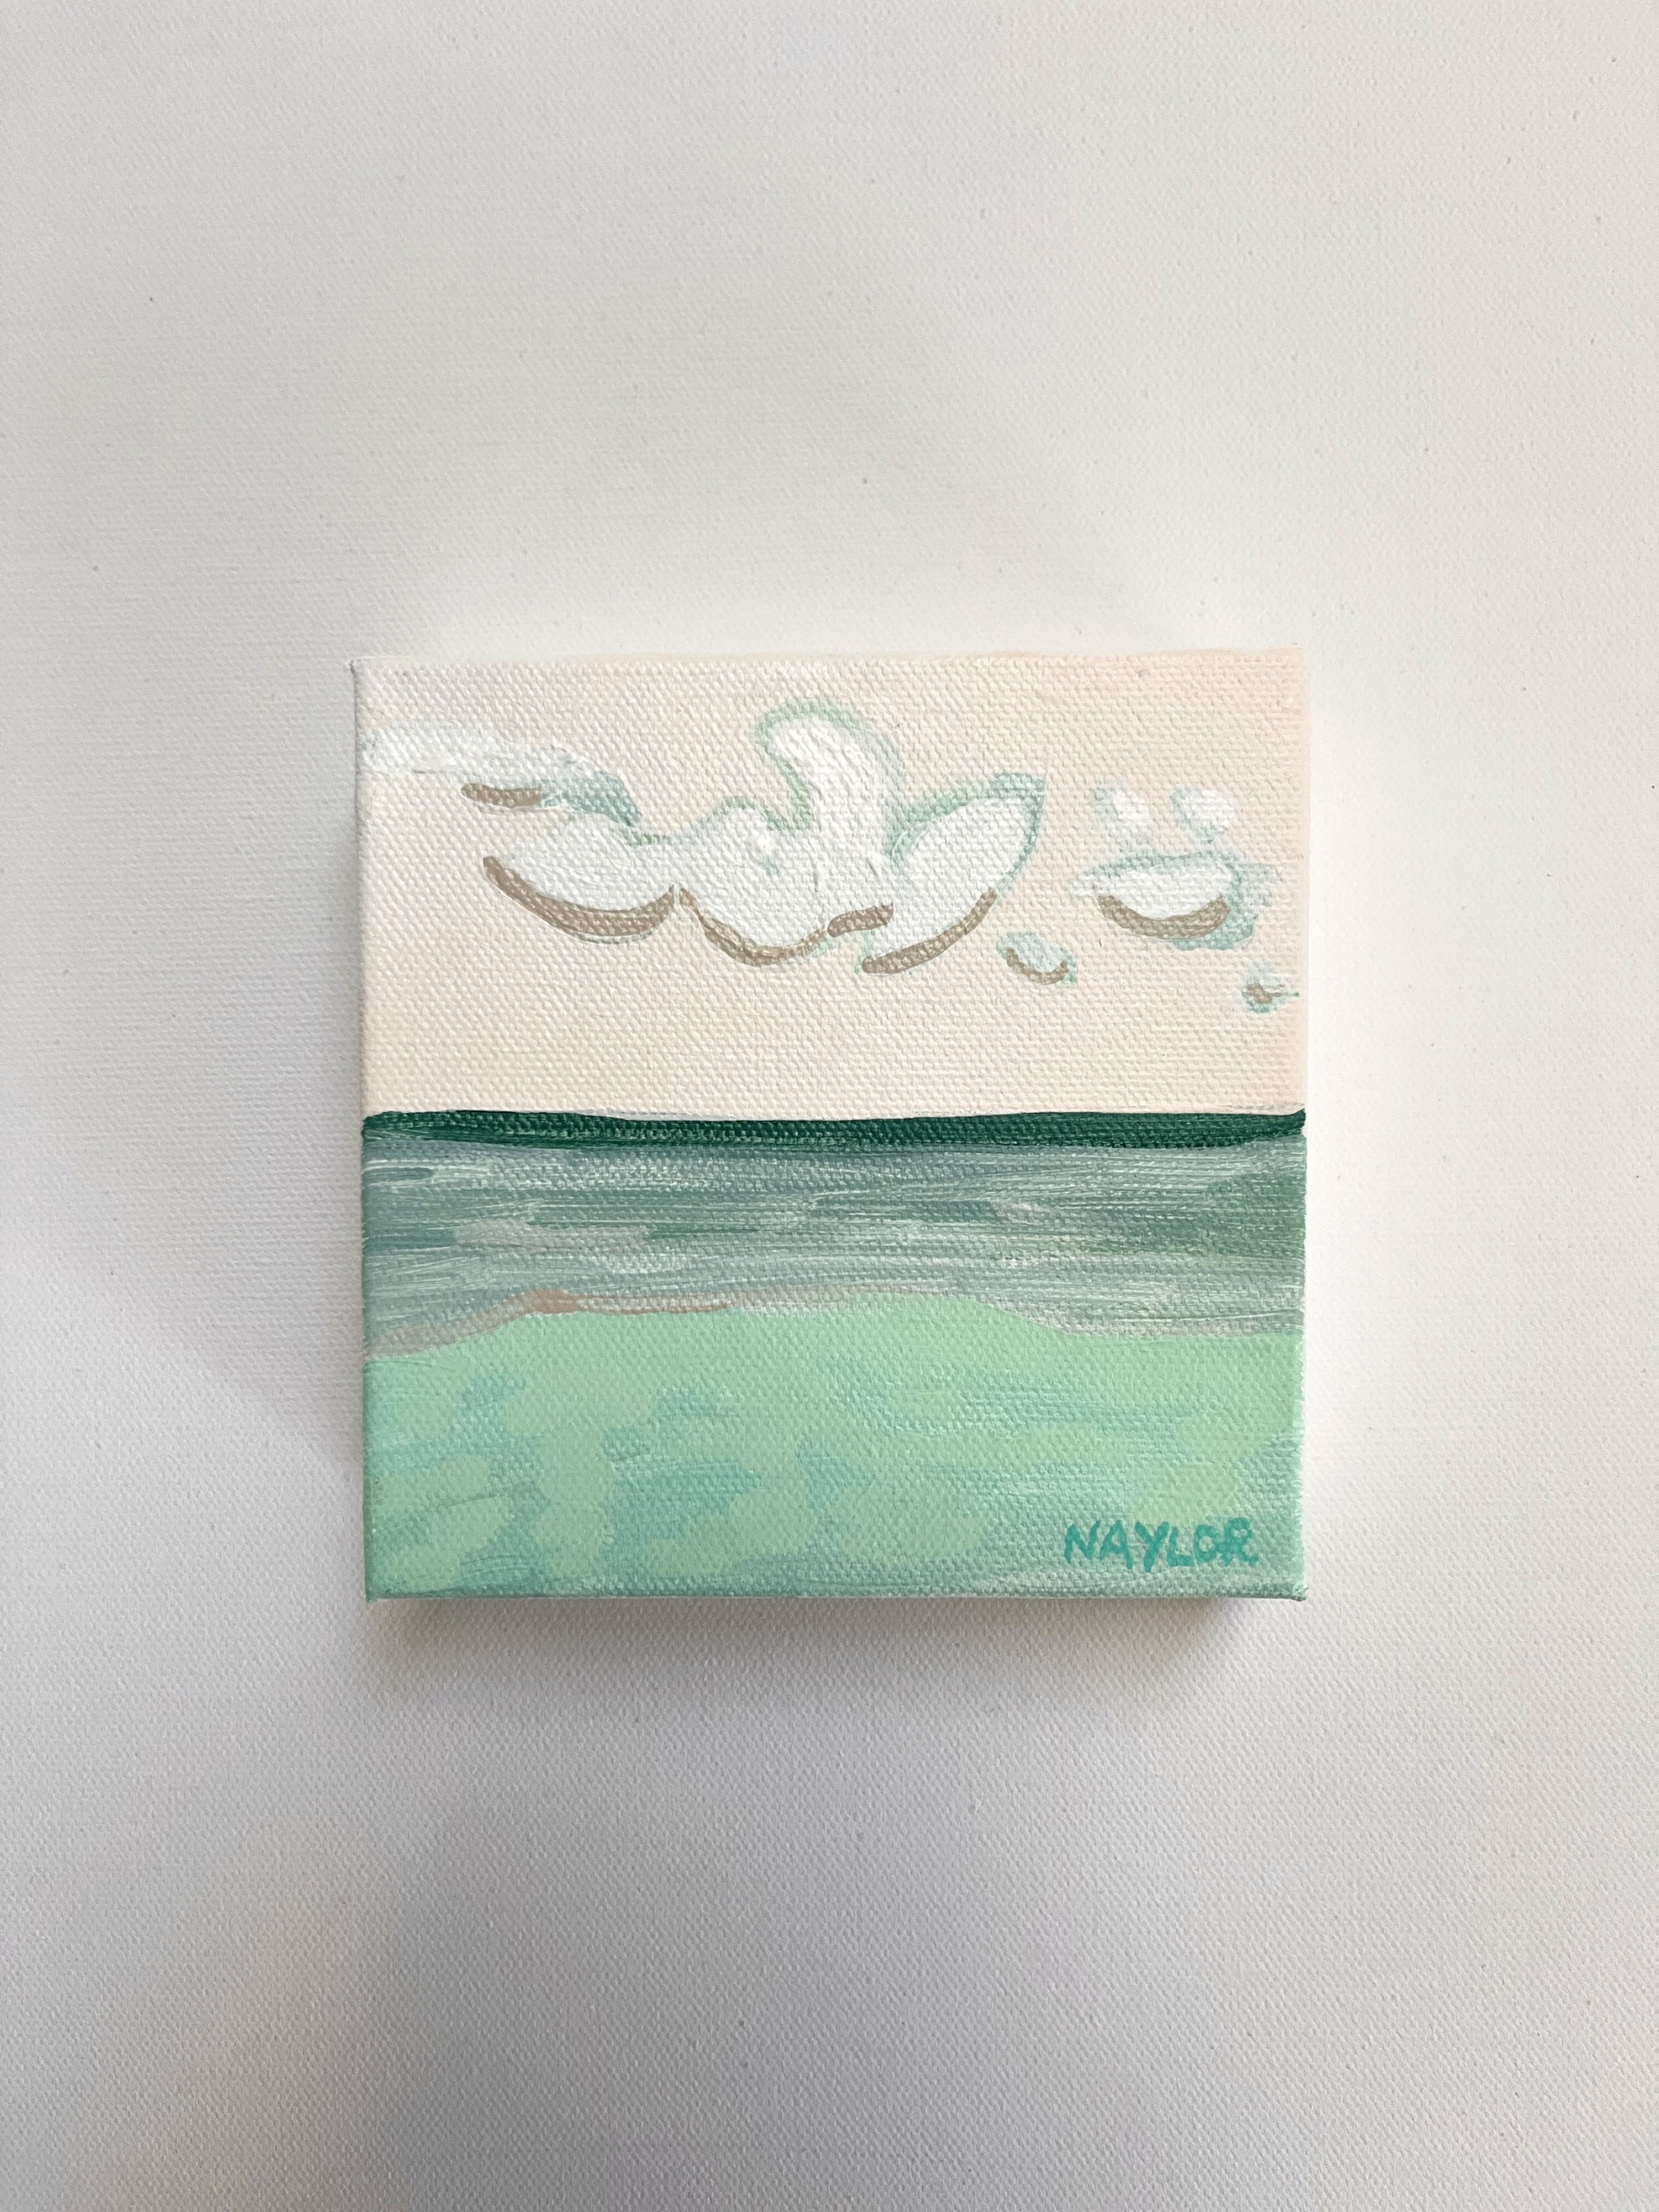 Petite Coastline 12 by Andrea Naylor